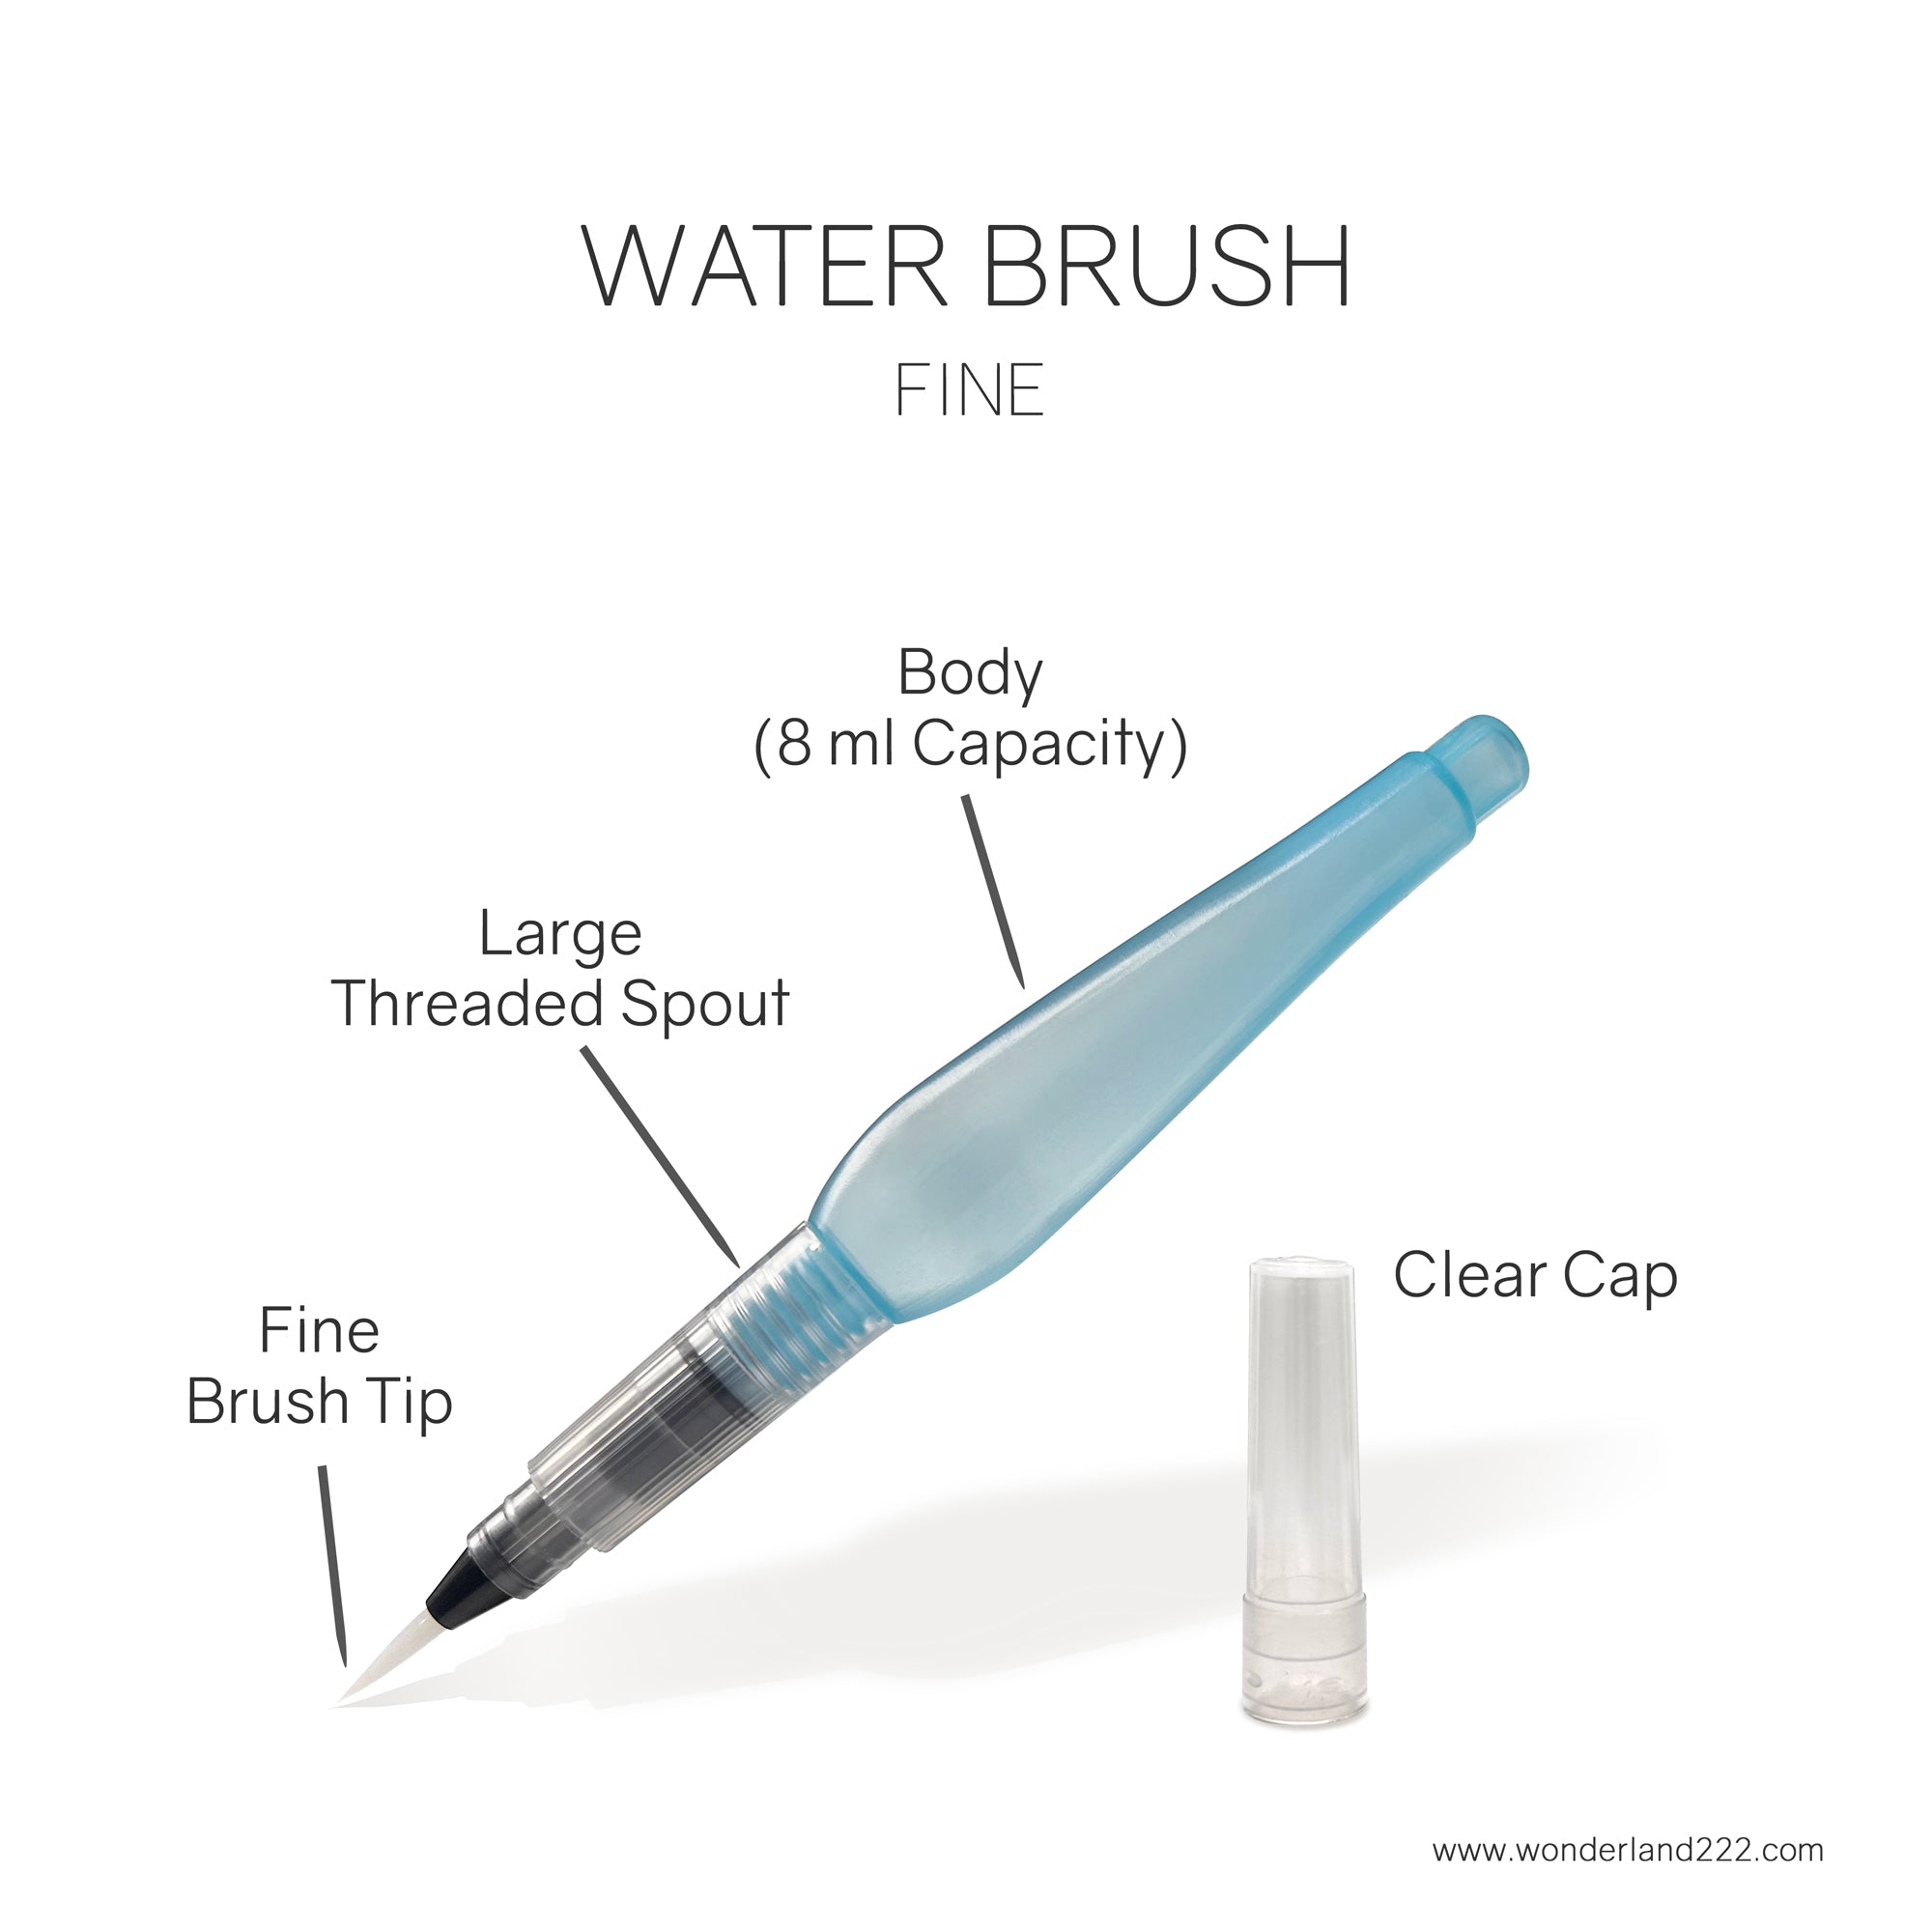 Pentel Japan Aquash Waterbrush Water Brush Pen, Medium